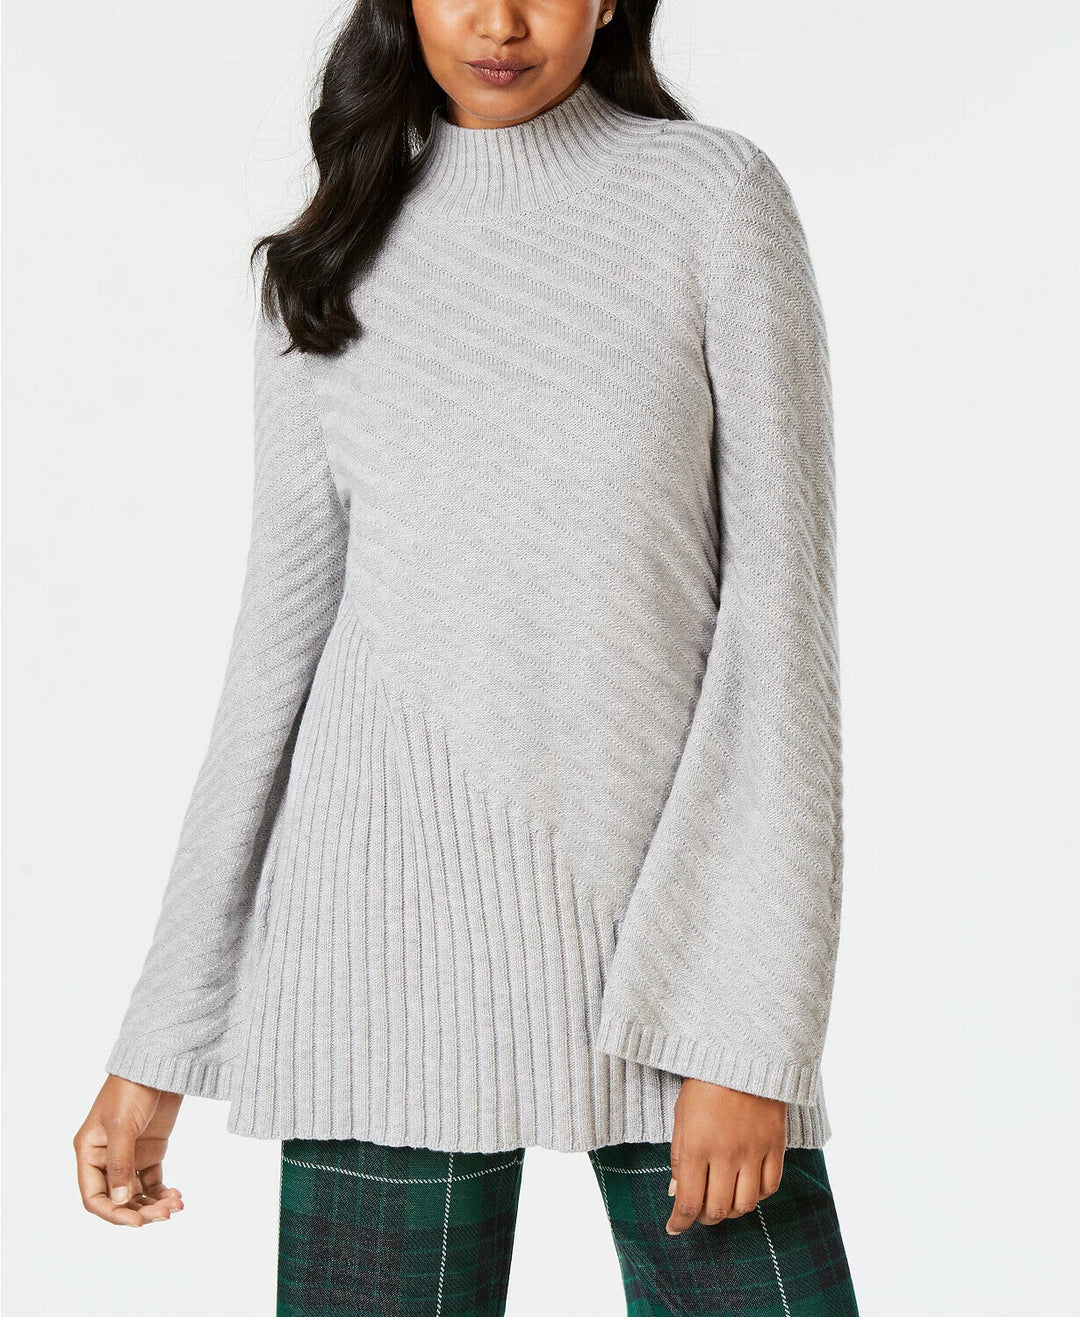 Women's Mixed-Stitch Mock-Neck Sweater